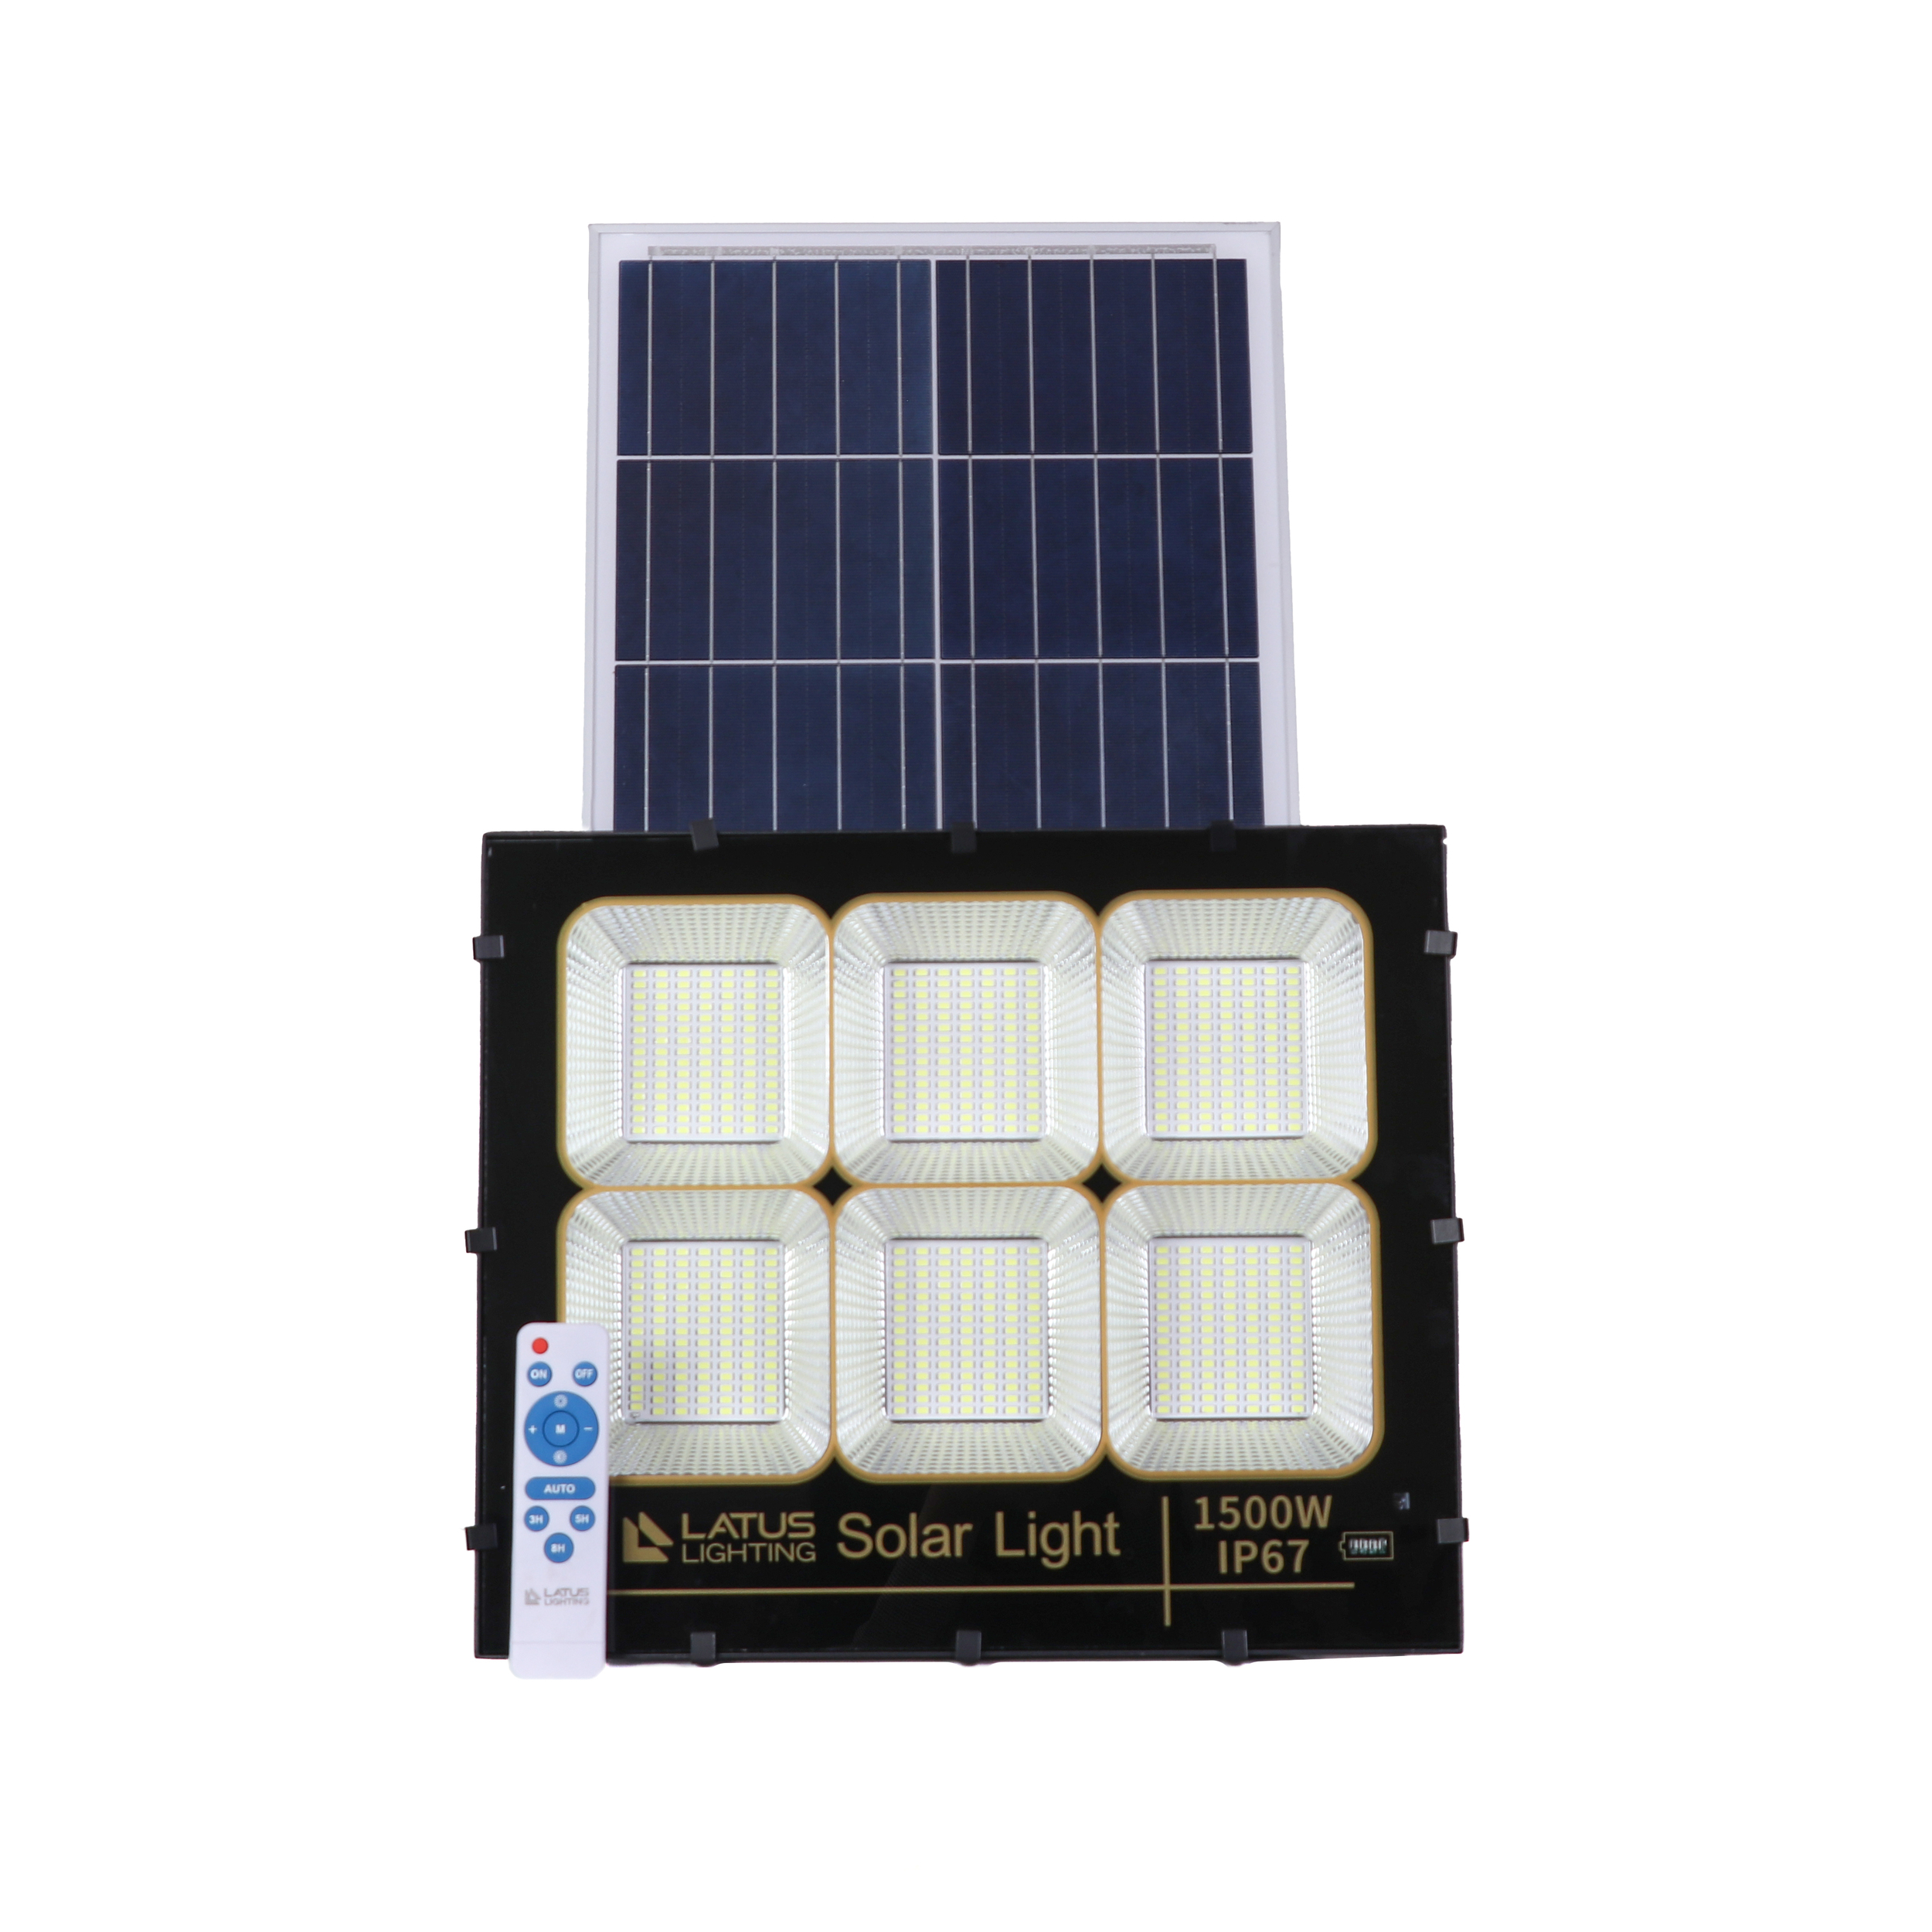 سیستم روشنایی خورشیدی لاتوس لایتینگ مدل 8500D ظرفیت 1500 وات